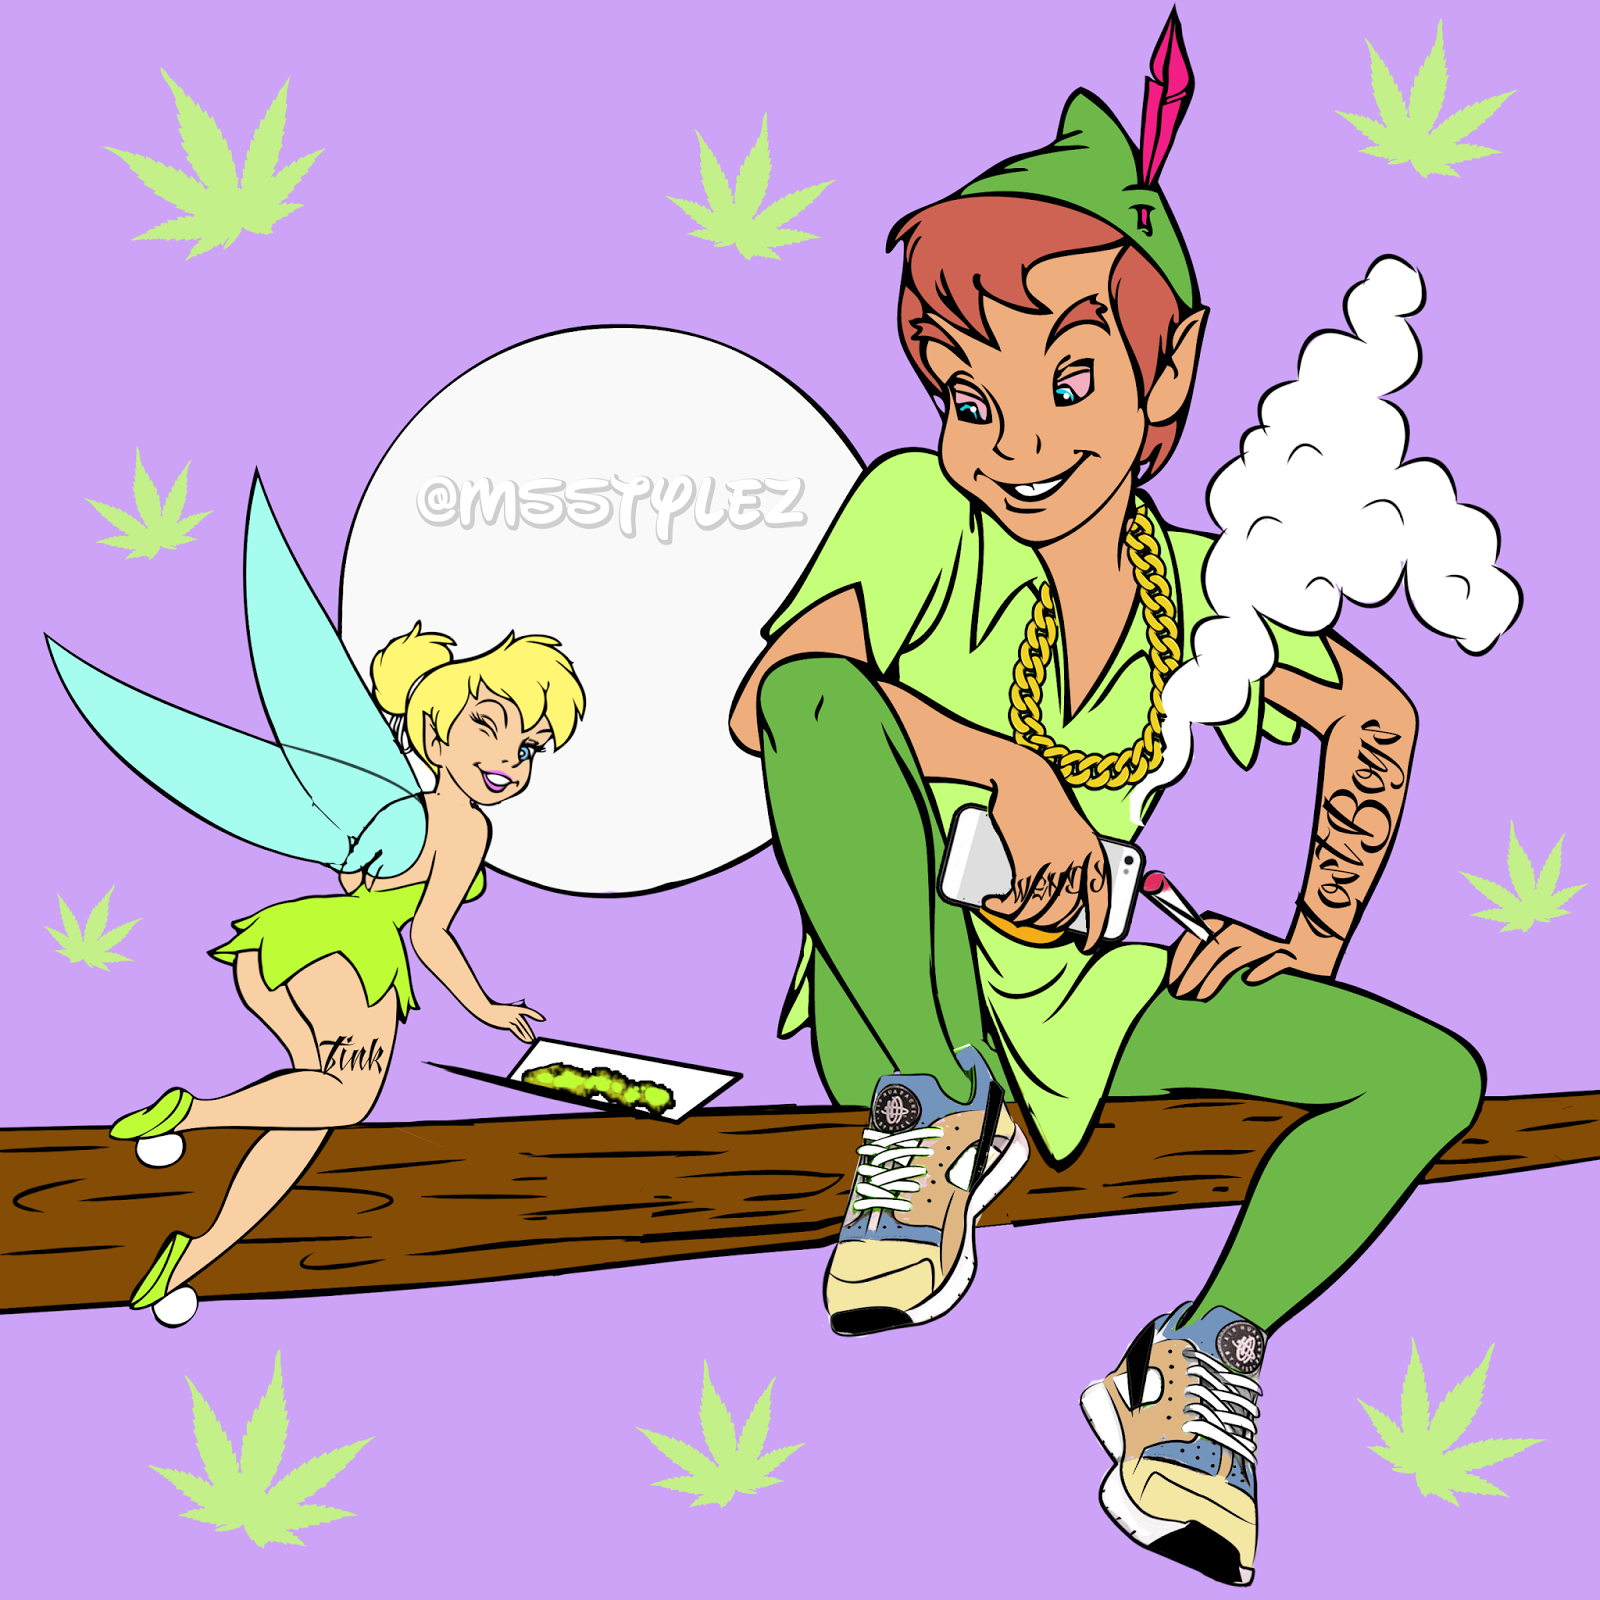 Disney Princess Smoking Weed